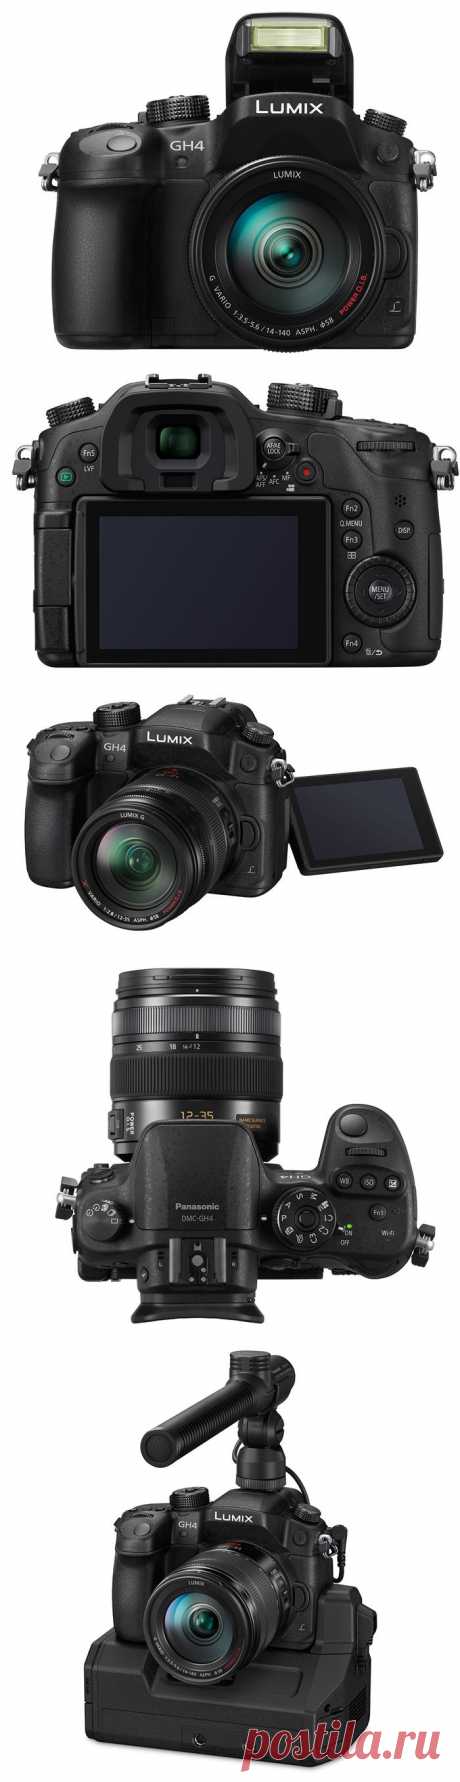 Беззеркальный фотоаппарат Panasonic Lumix DMC-GH4 поддерживает 4K-видеозапись / Новости hardware / 3DNews - Daily Digital Digest